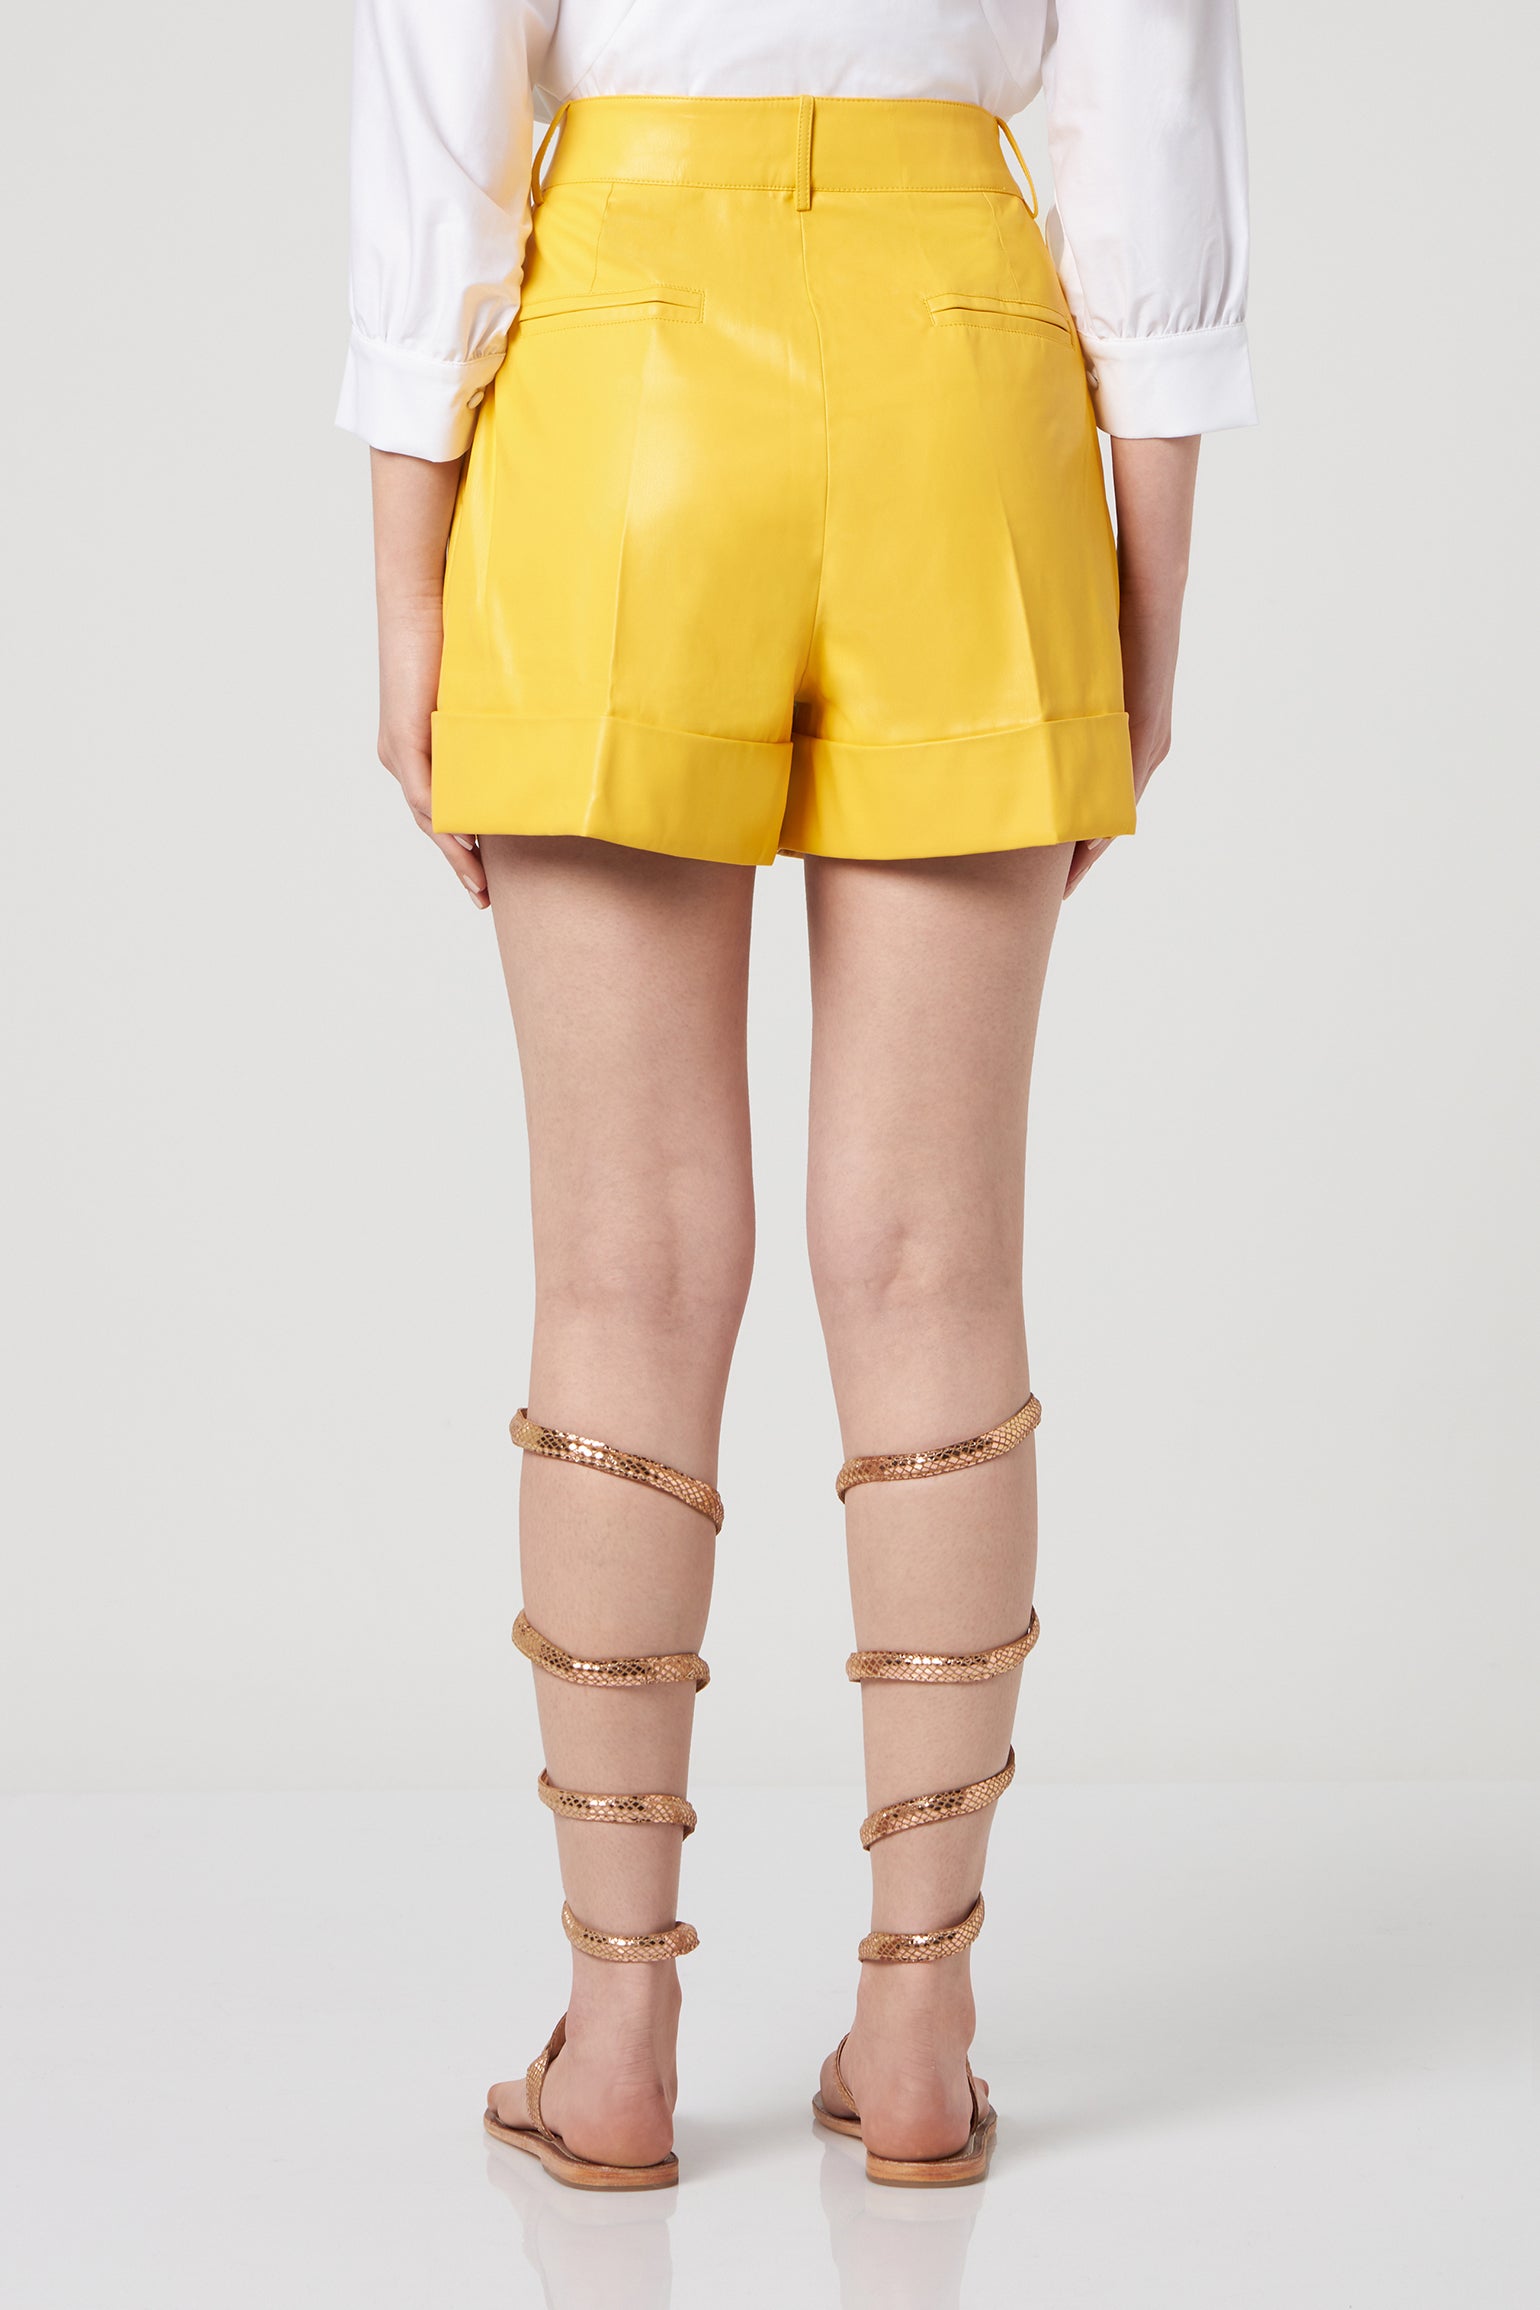 JIJIL Yellow Faux Leather Shorts